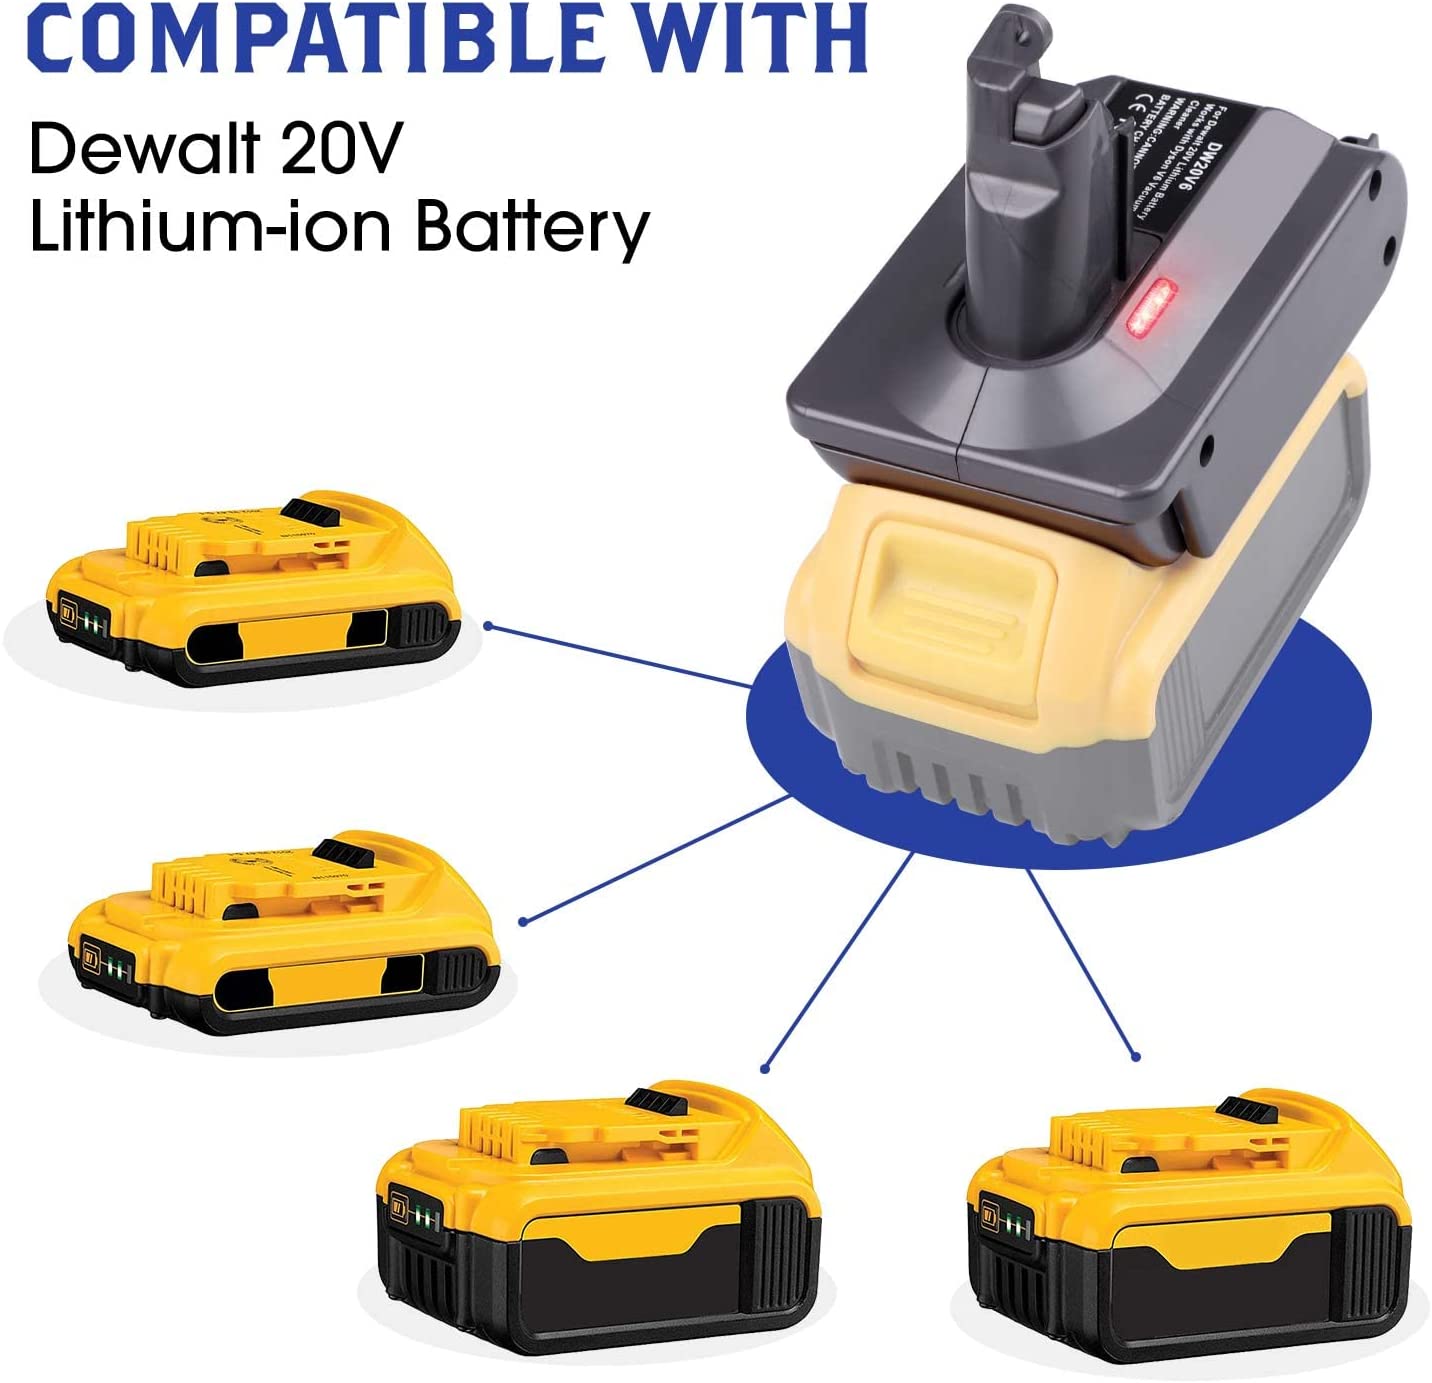 Dyson batteriadapter för Dewalt 20V litiumbatteri omvandlat till Dyson V7-batteri